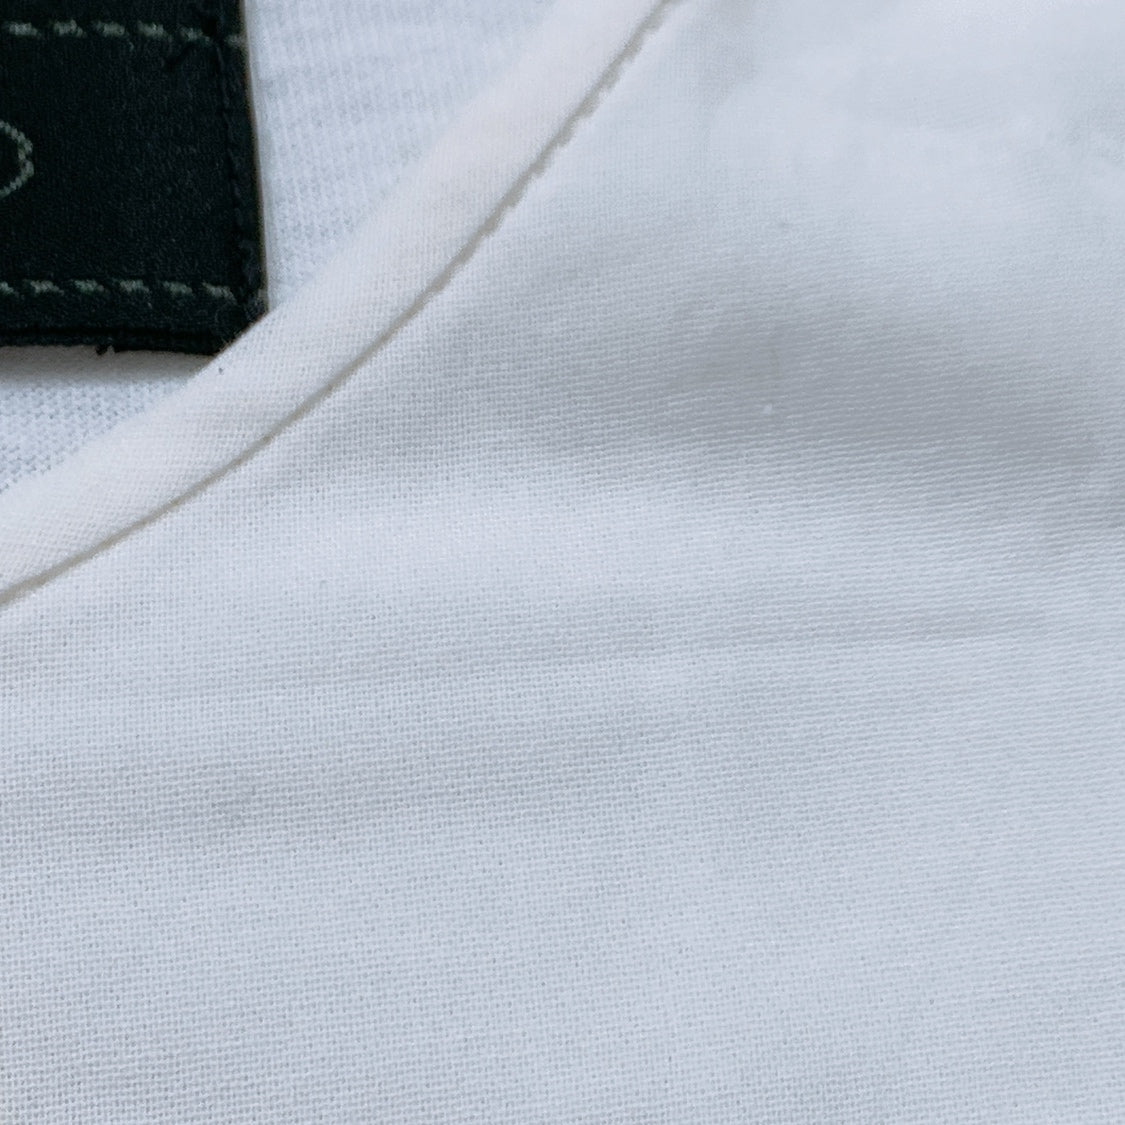 レディースXL 4 UNTITLED 半袖ブラウス 白 ホワイト 美品 ポリエステル100 カジュアル シンプル 無地 アンタイトル 【14833】